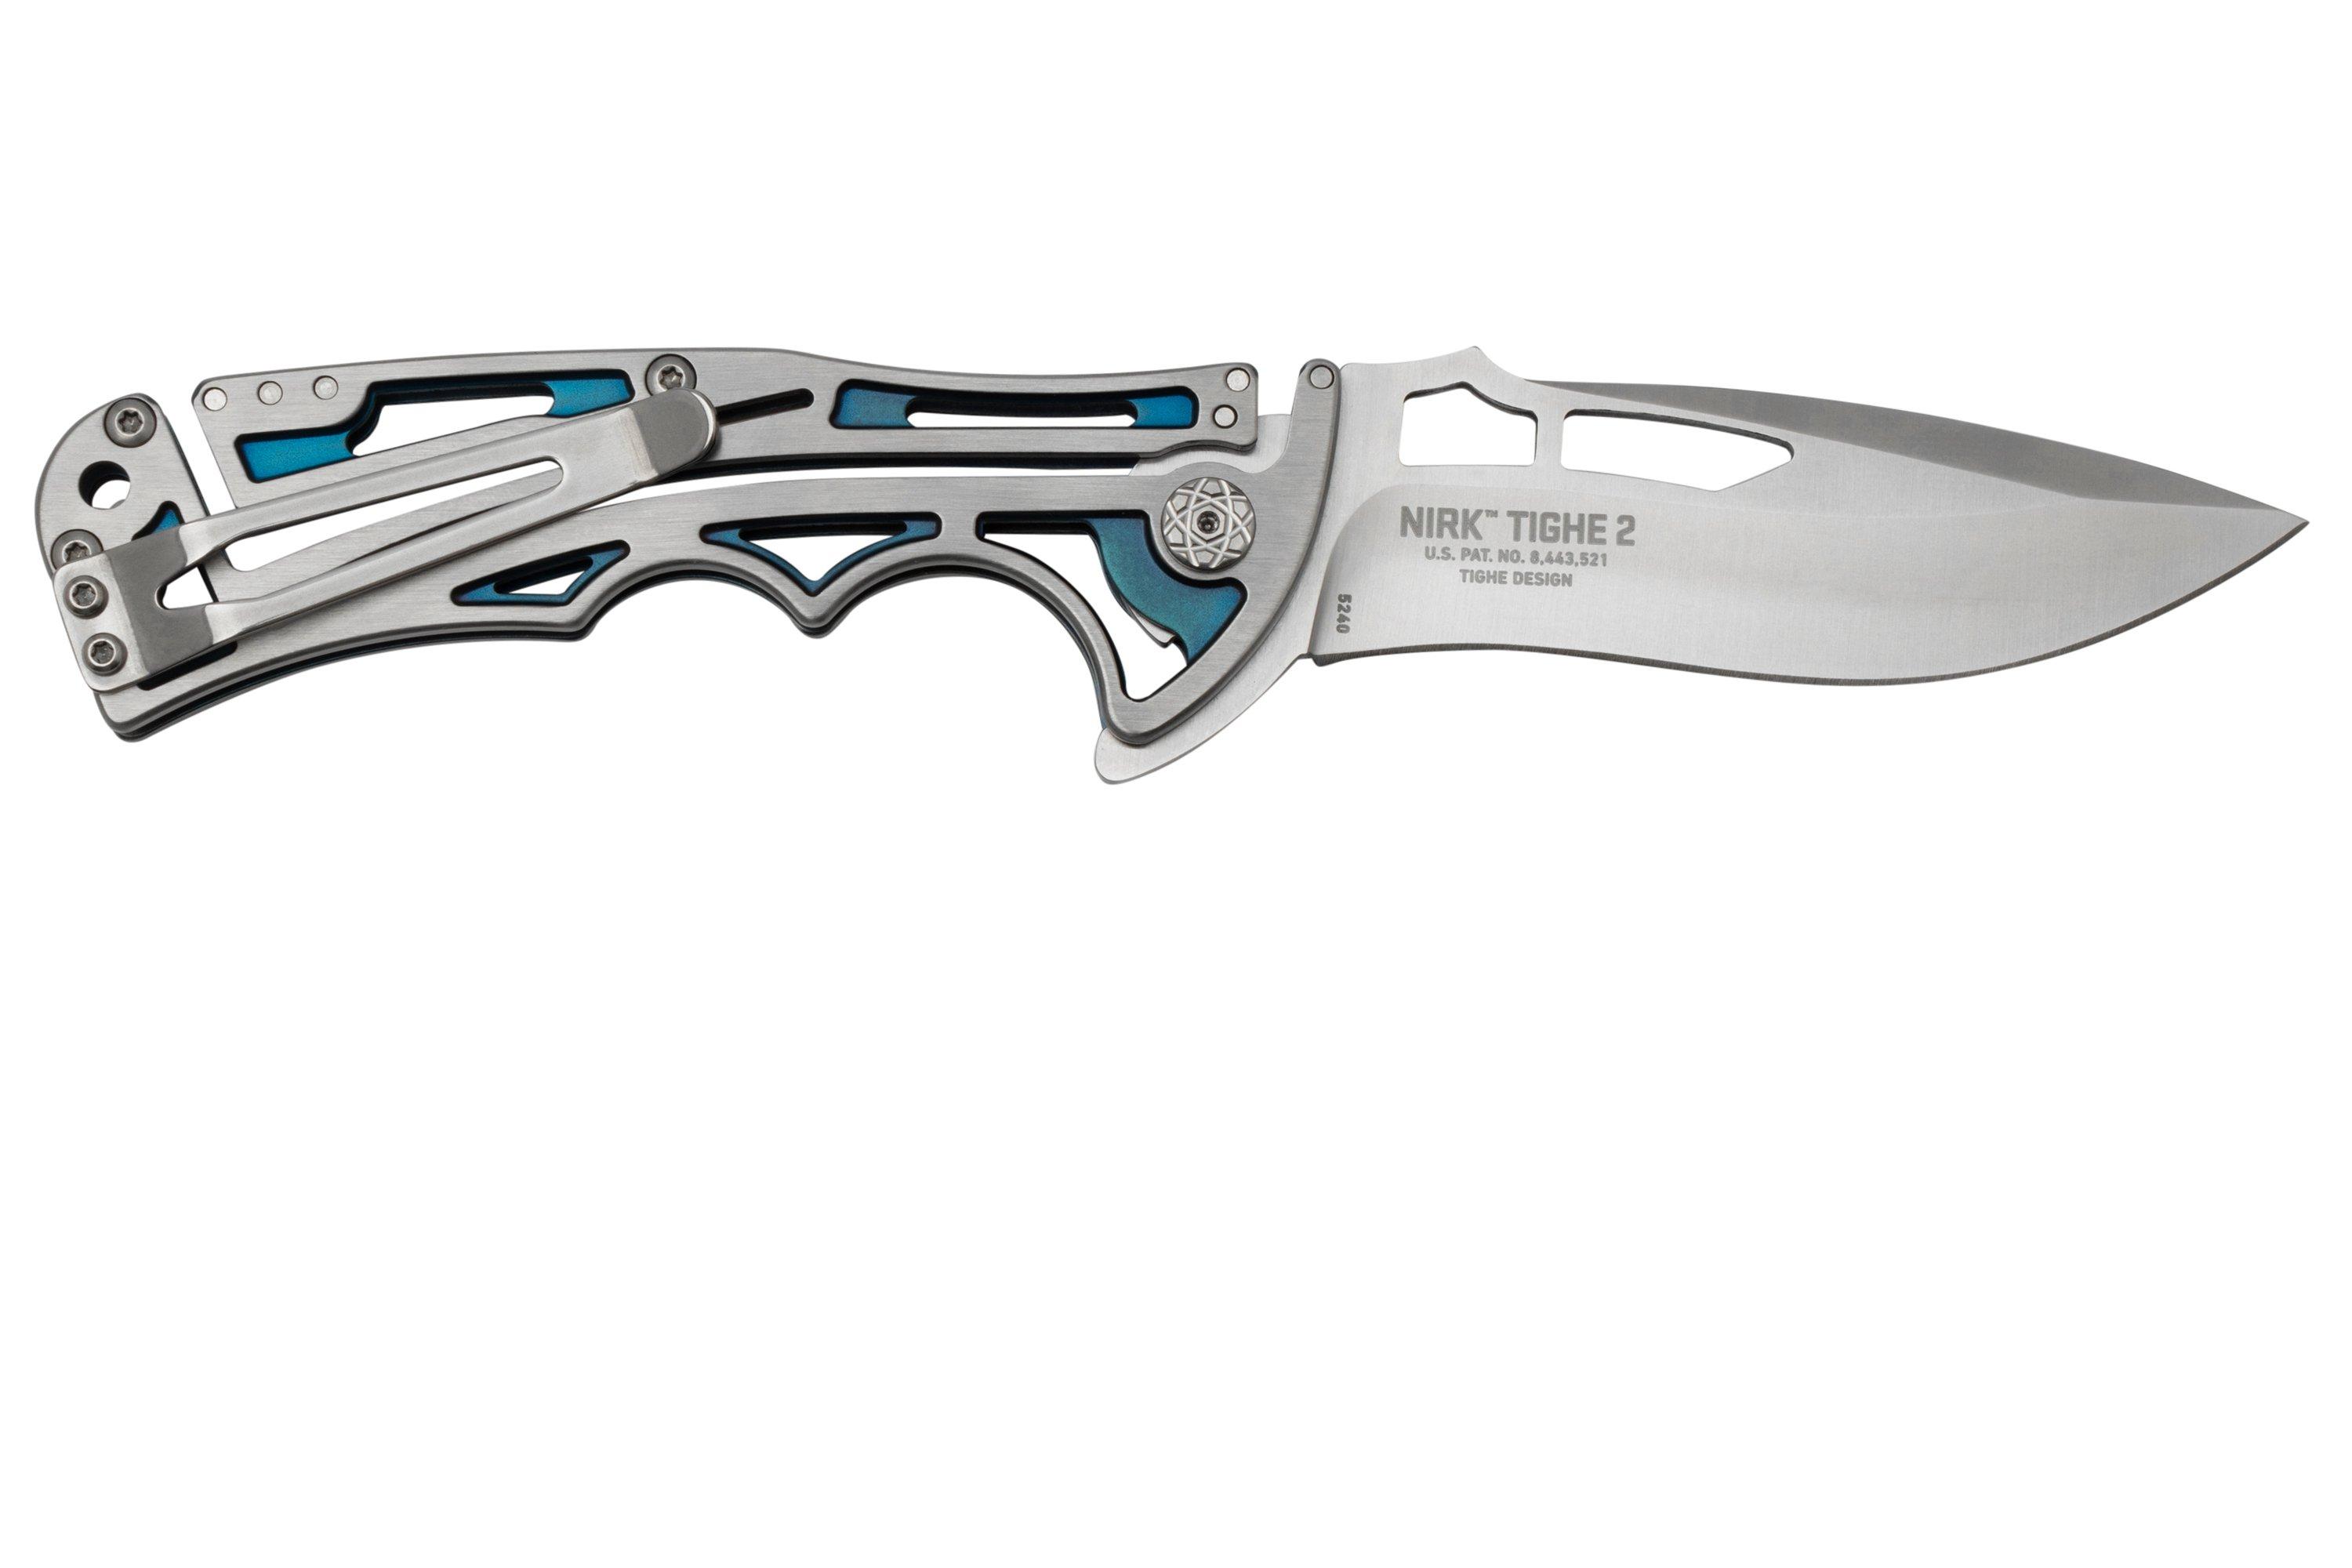 CRKT Nirk Tighe 2, 5240 pocket knife, Brian Tighe design 